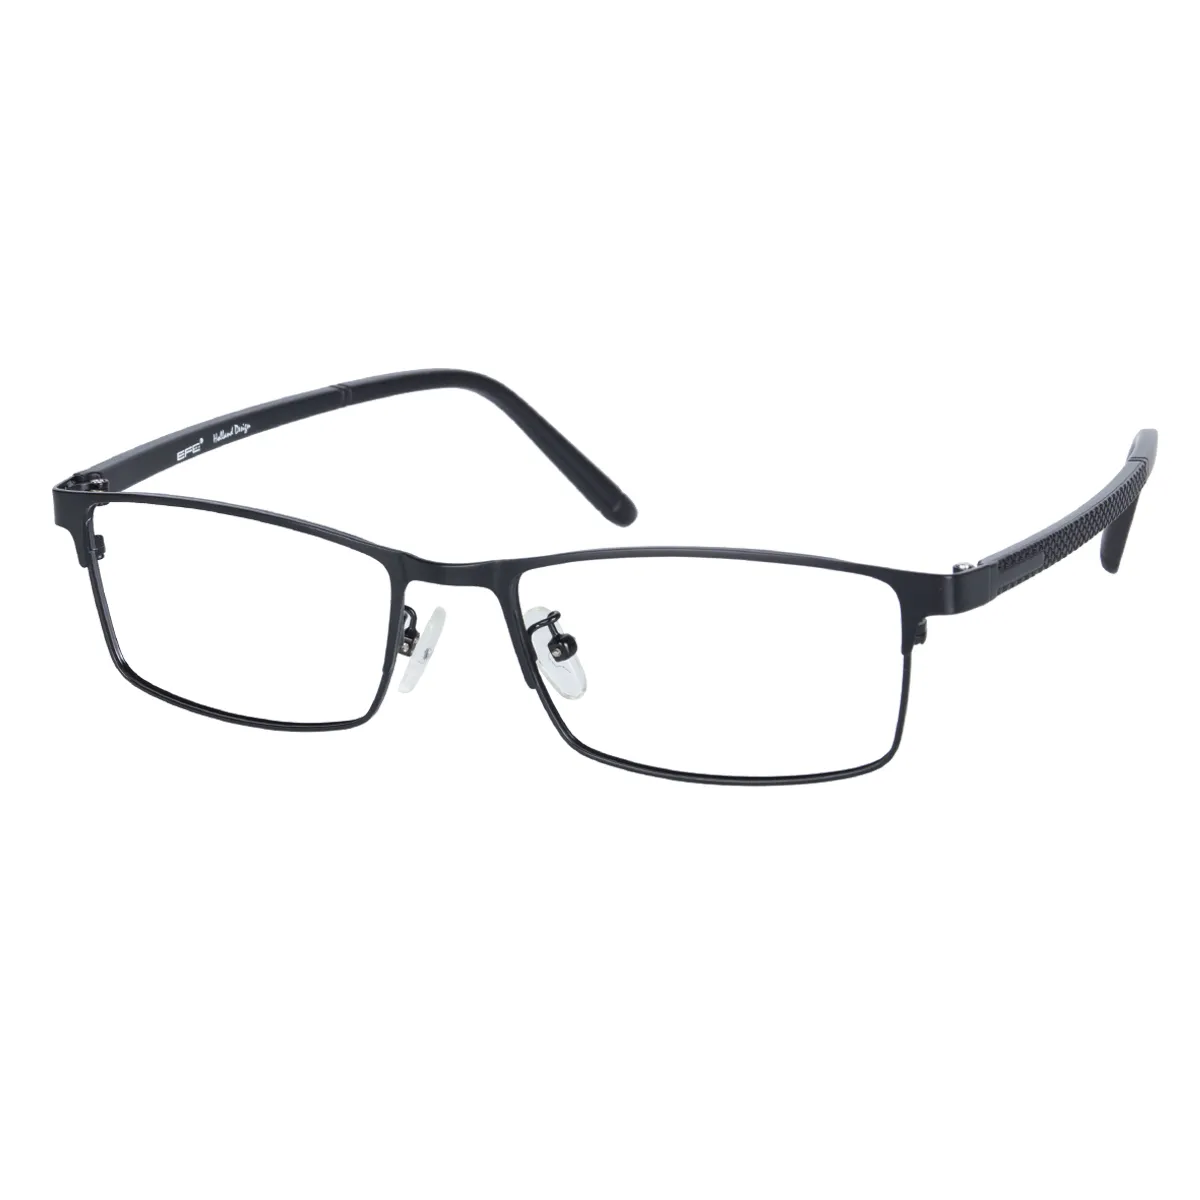 Don - Rectangle Black Glasses for Men